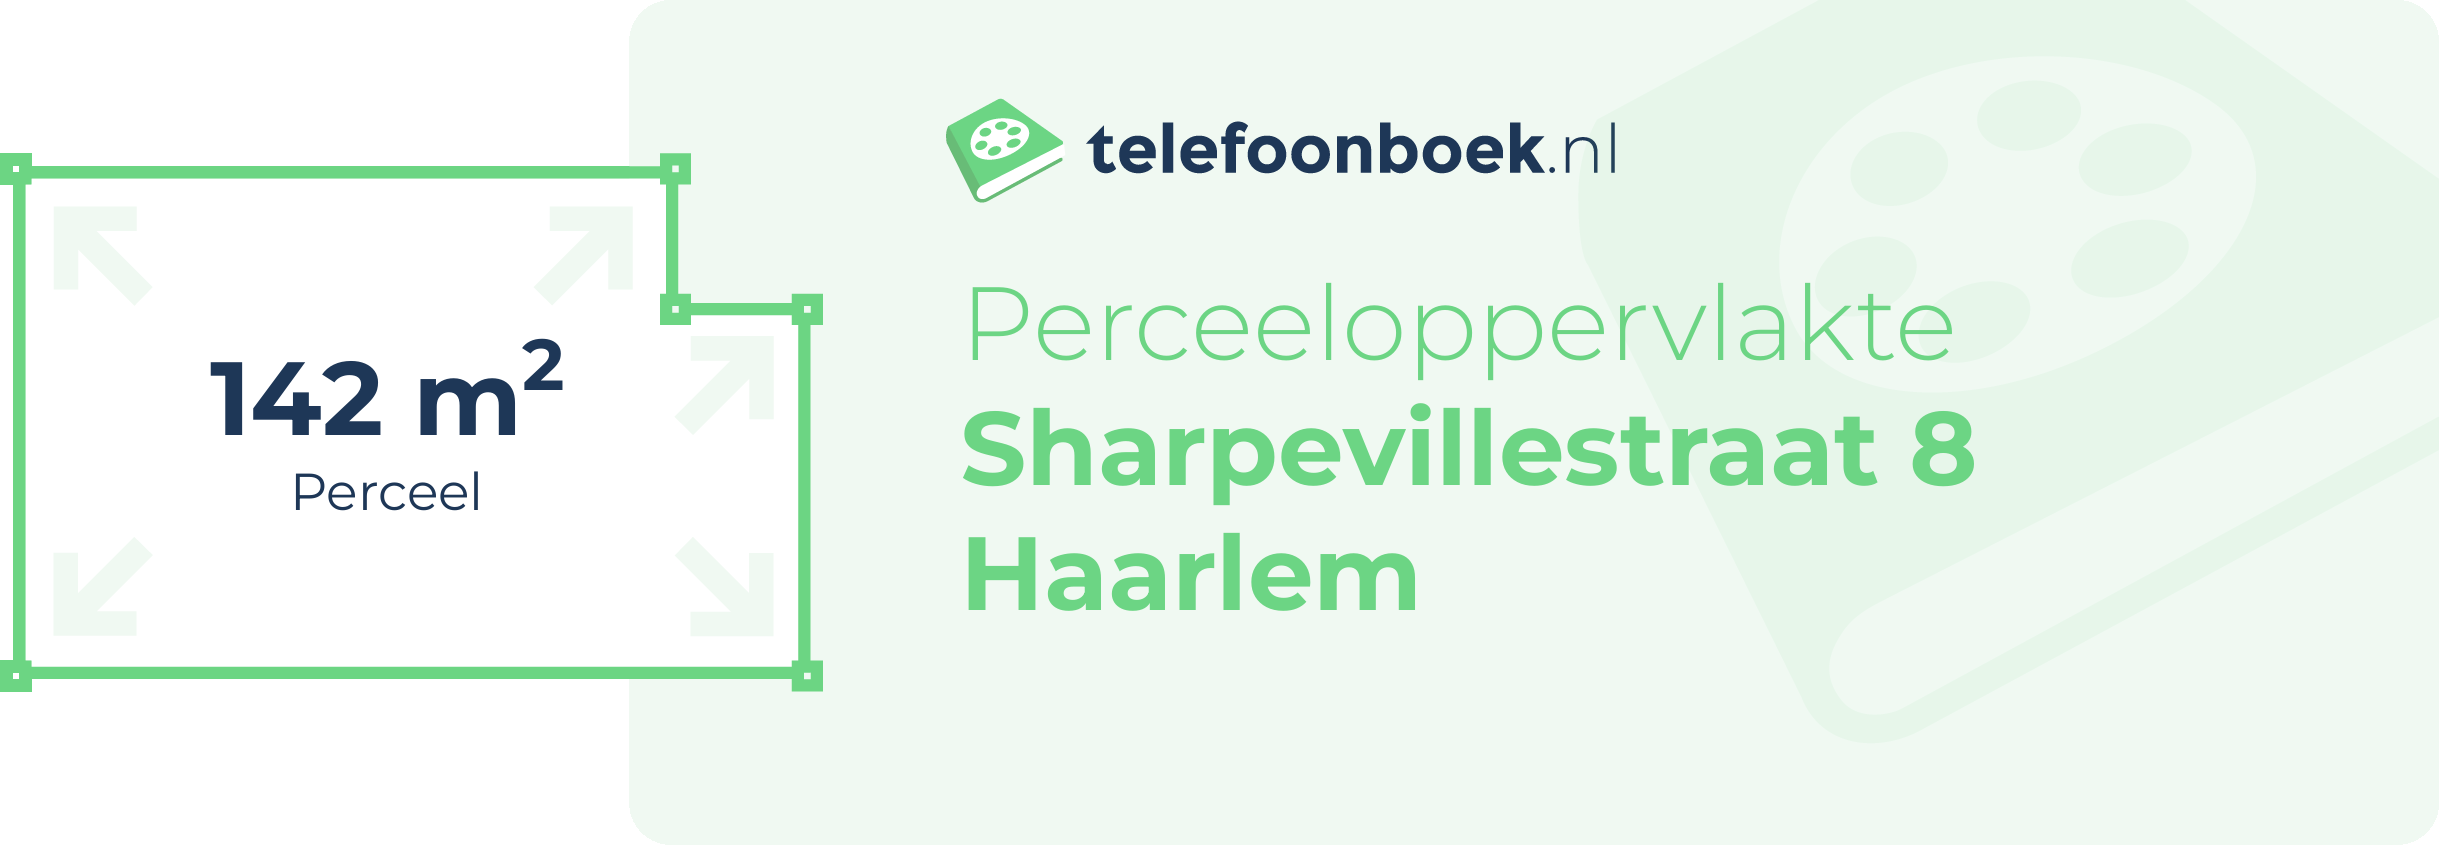 Perceeloppervlakte Sharpevillestraat 8 Haarlem